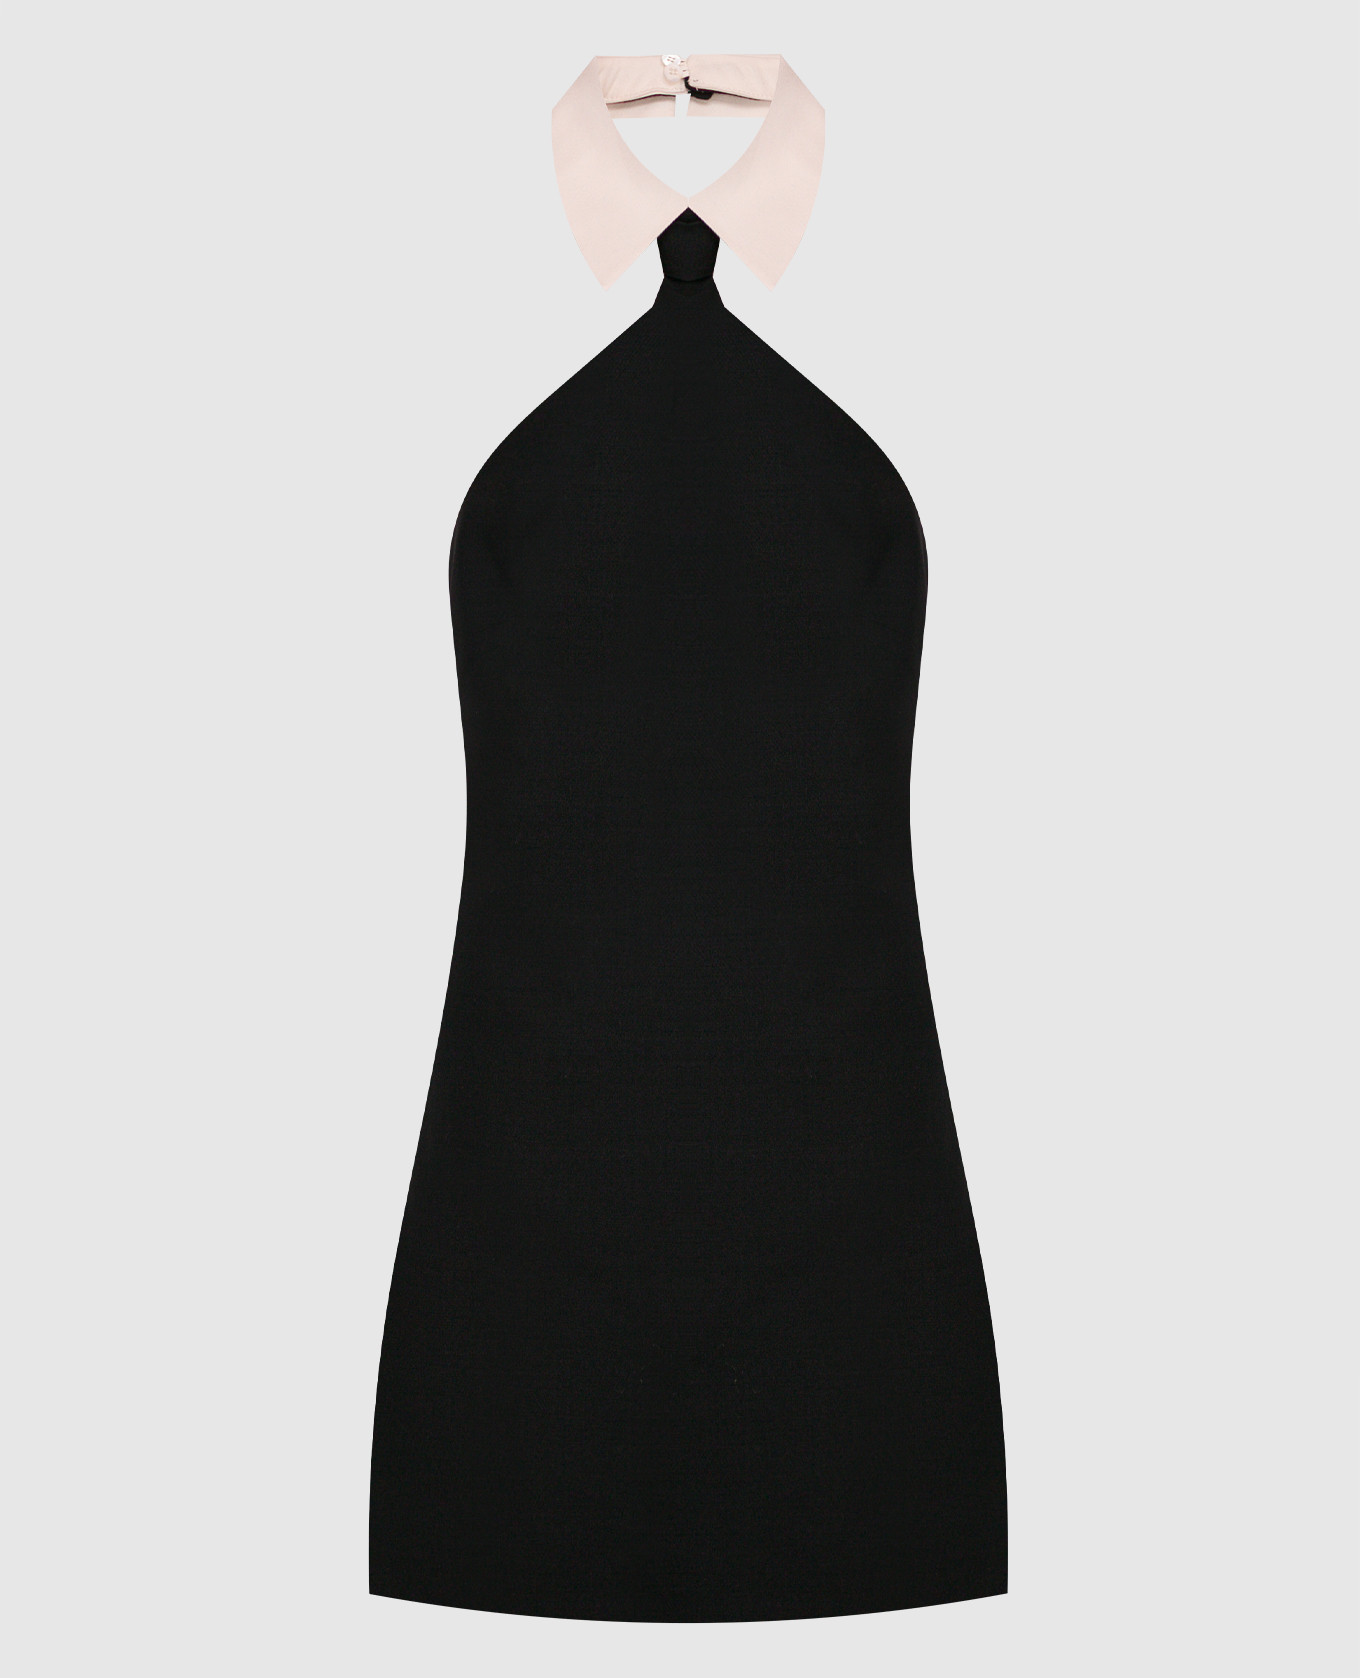 Черное платье мини из шерсти и шелка с открытыми плечами.